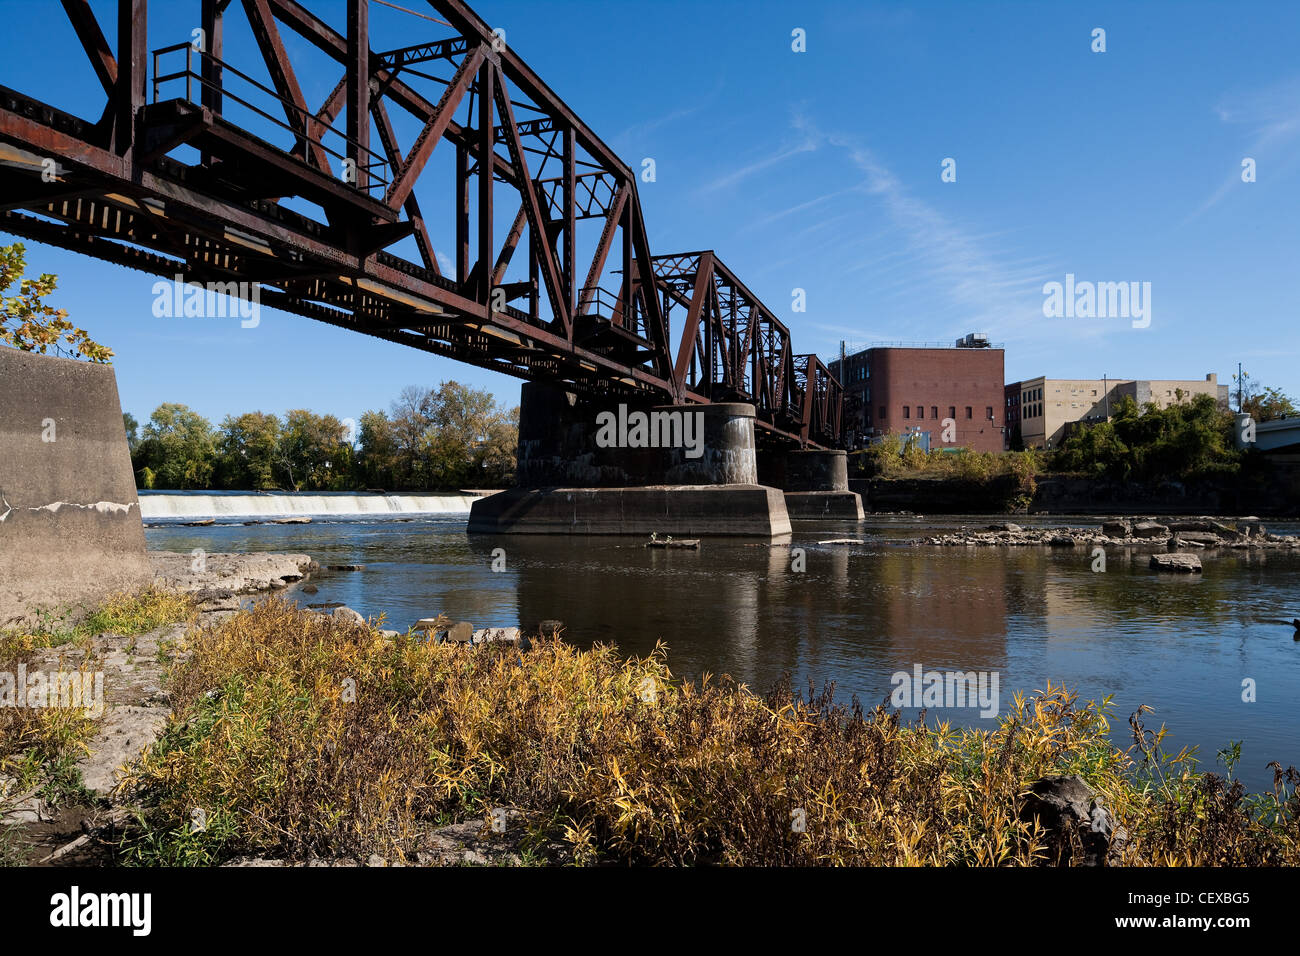 Railroad bridge in Zanesville Ohio crossing the Muskingum River Stock Photo